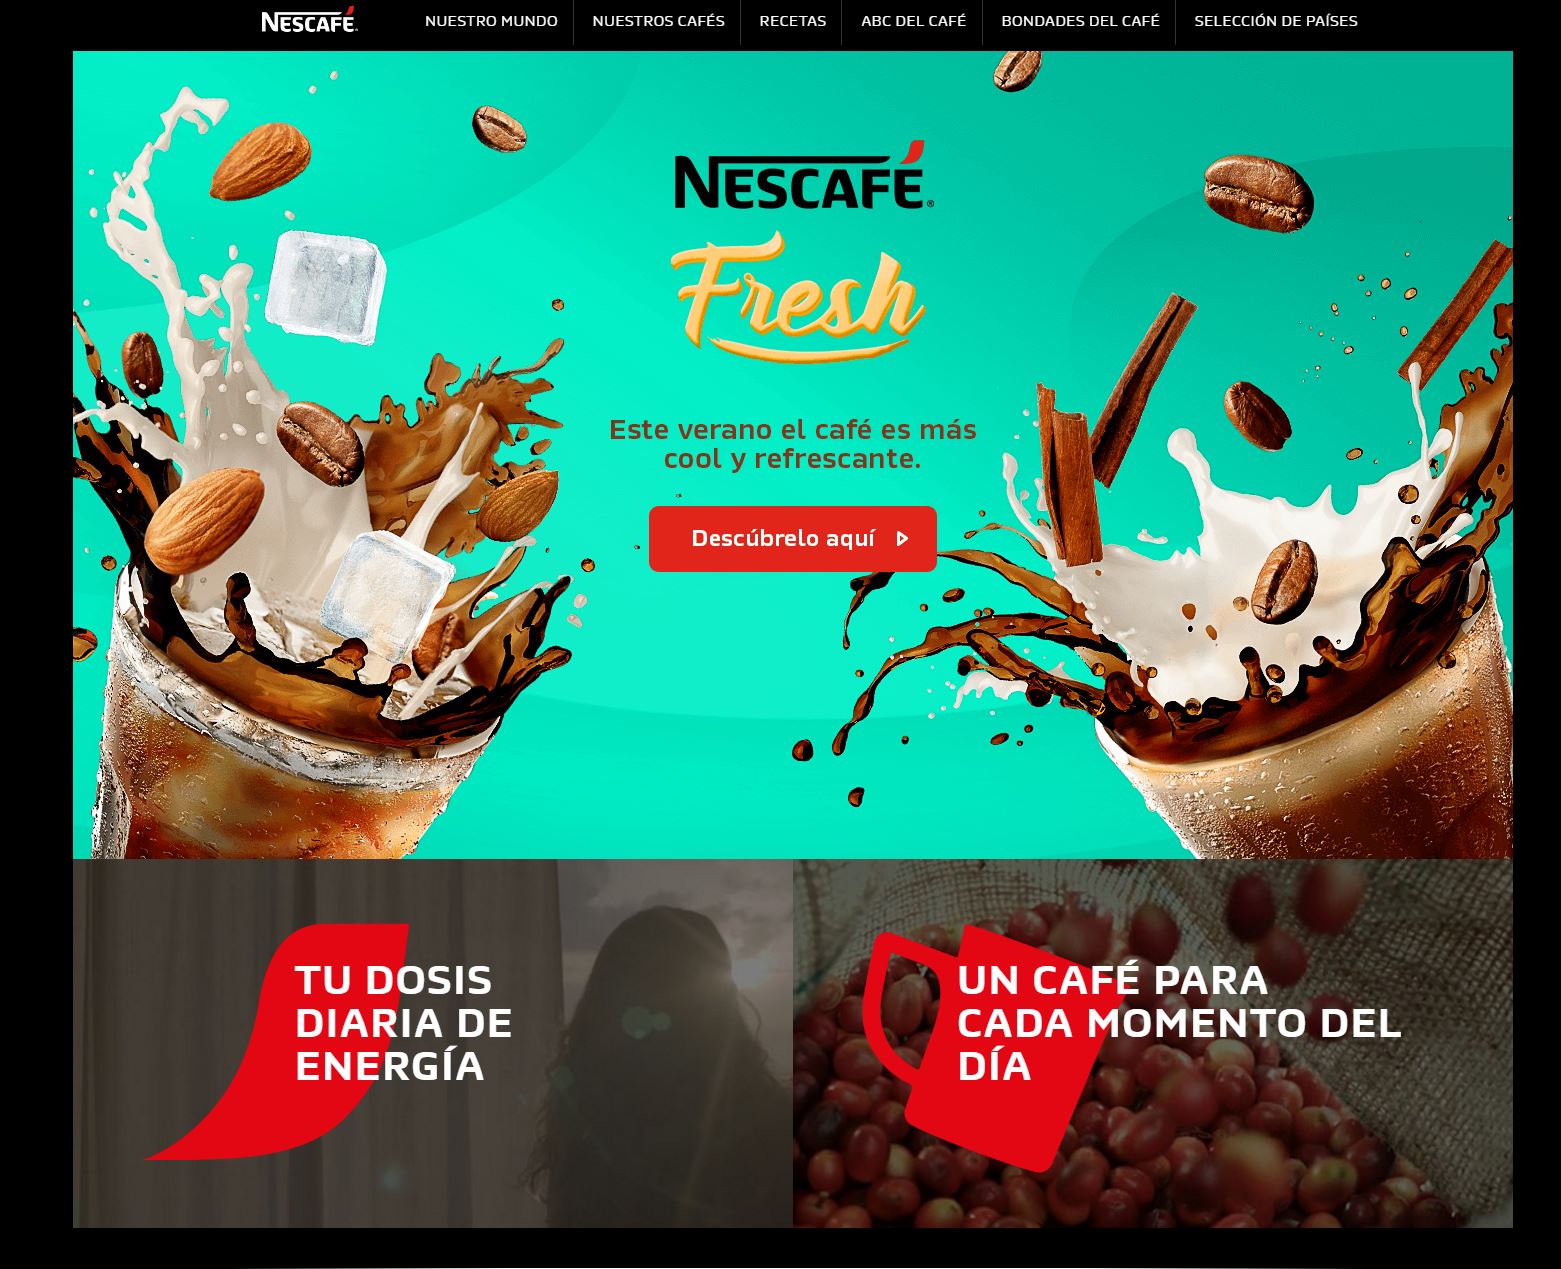 Nescafe Peru